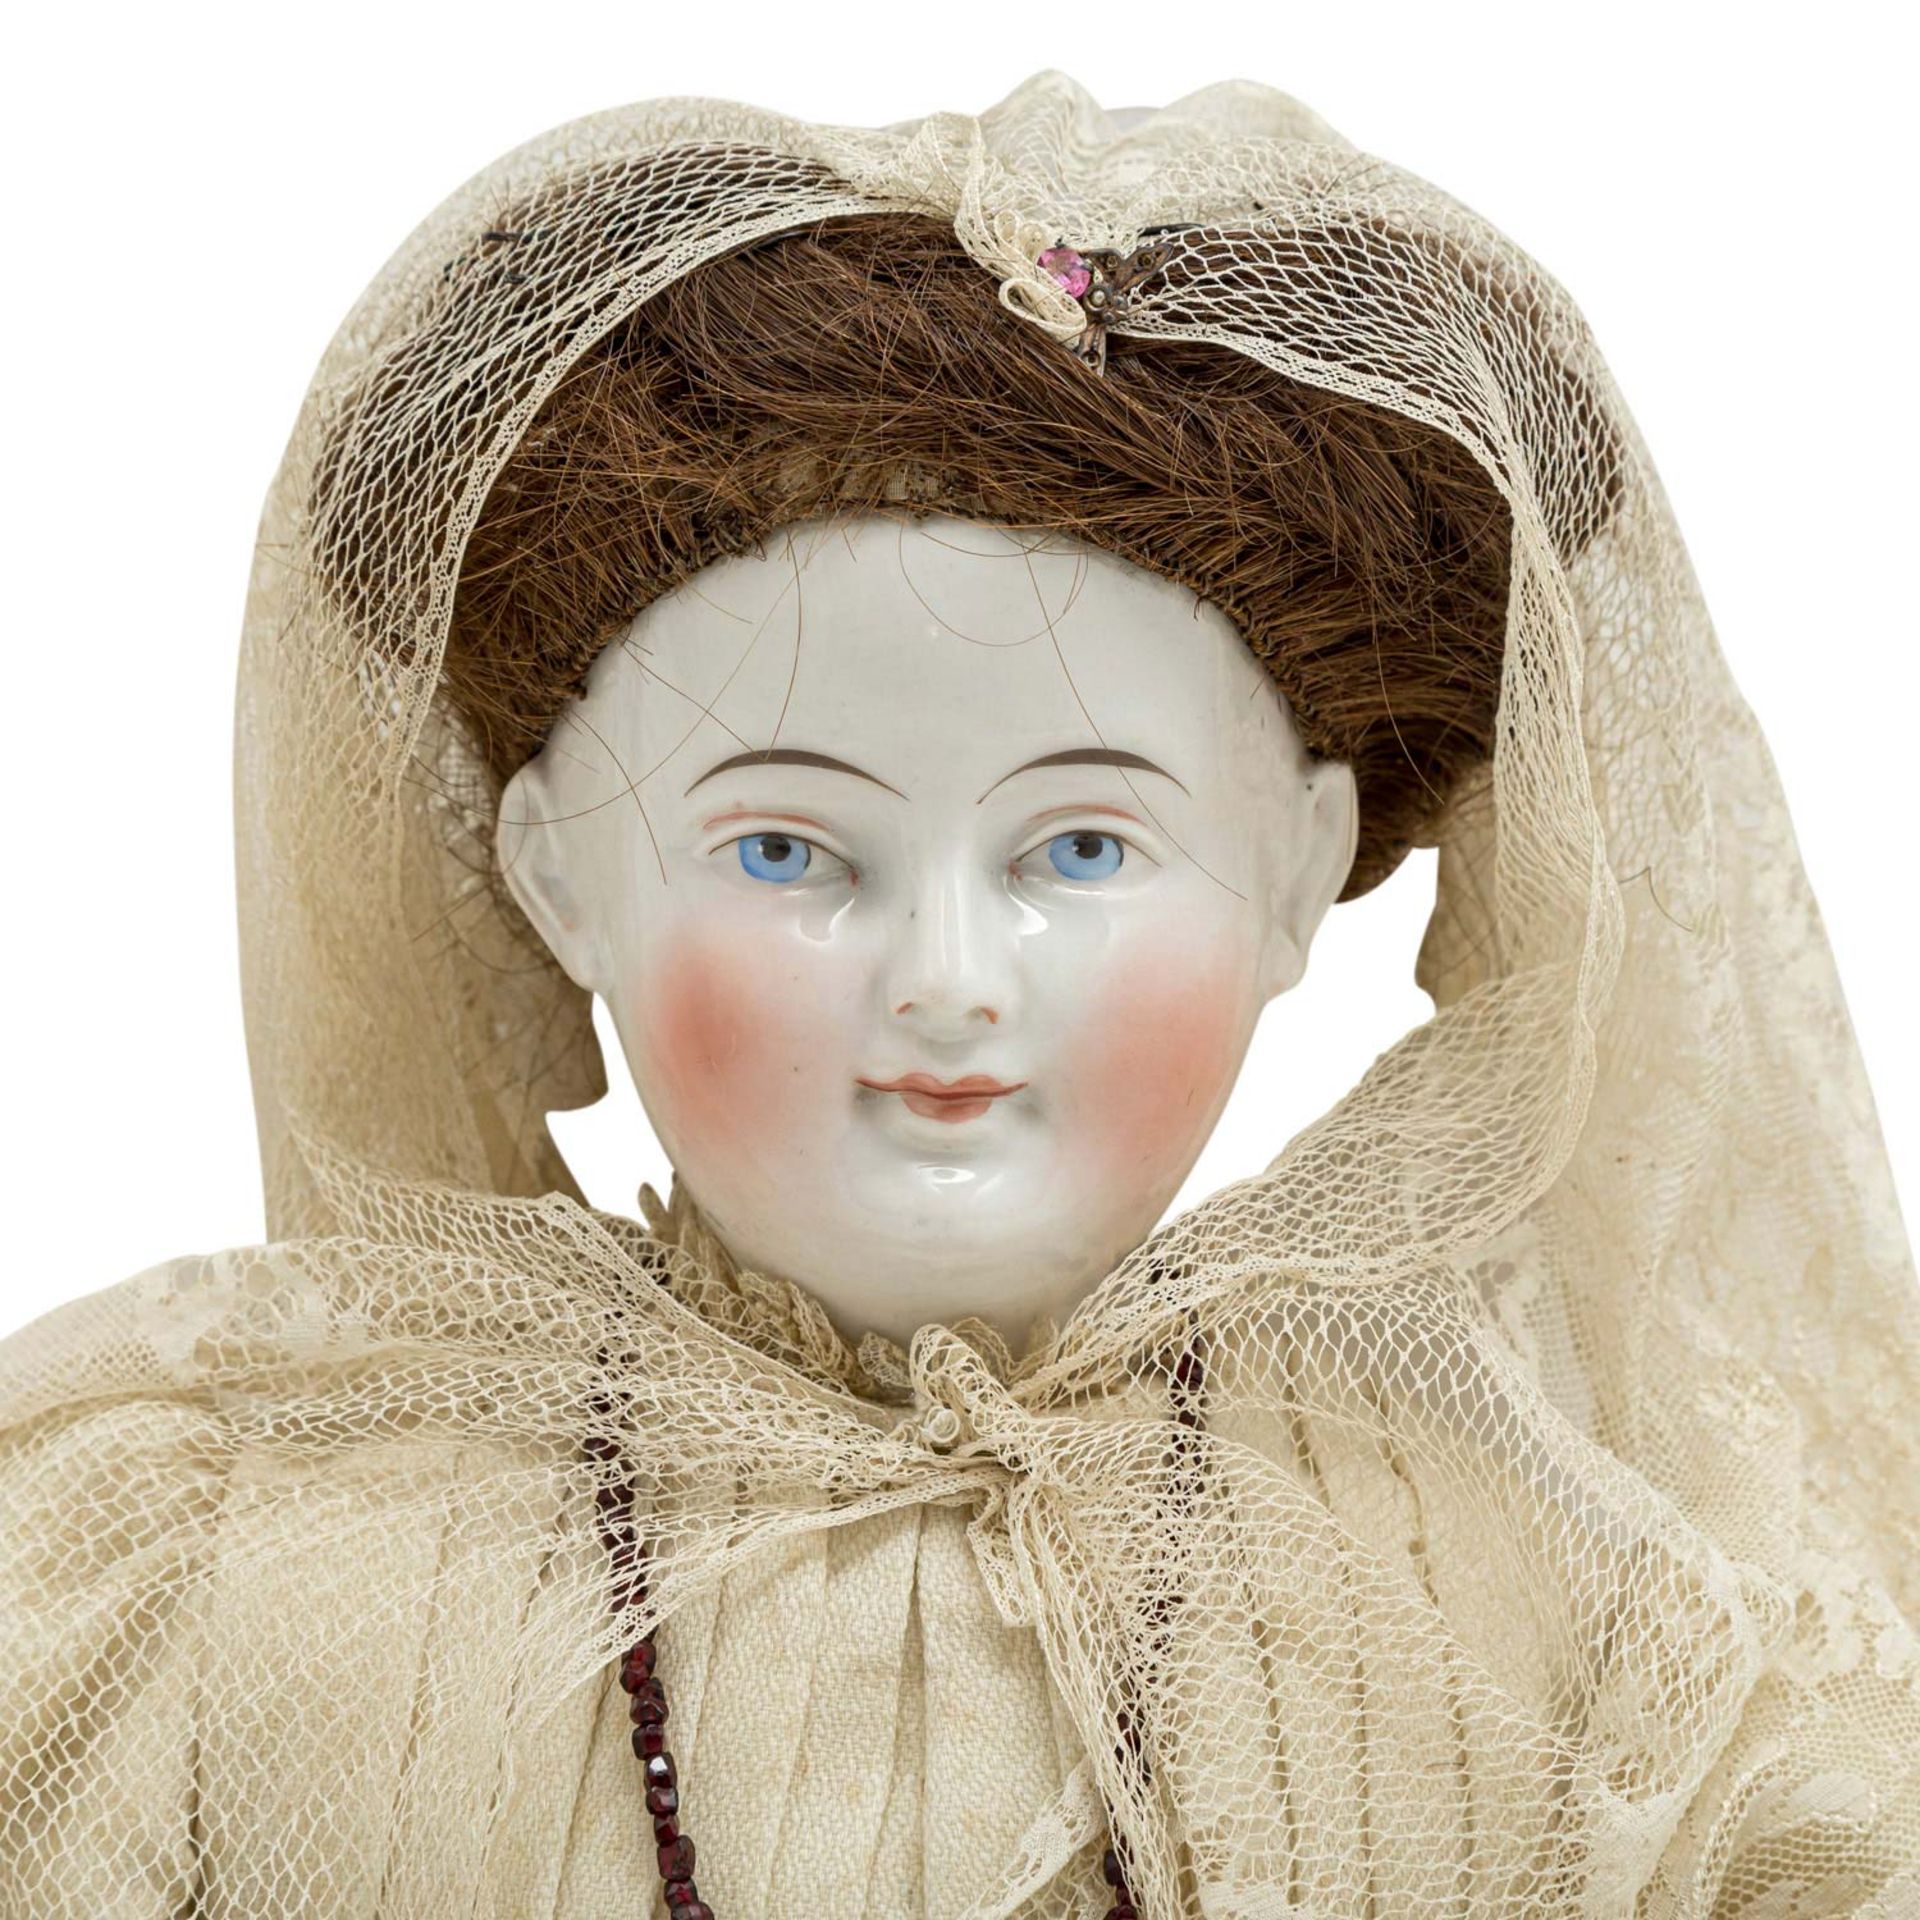 CHINA-HEAD Puppe, wohl 19. Jh.Brustblattkopf-Puppe aus glasiertem Porzellan, blaue, gemalte Augen, - Bild 2 aus 3